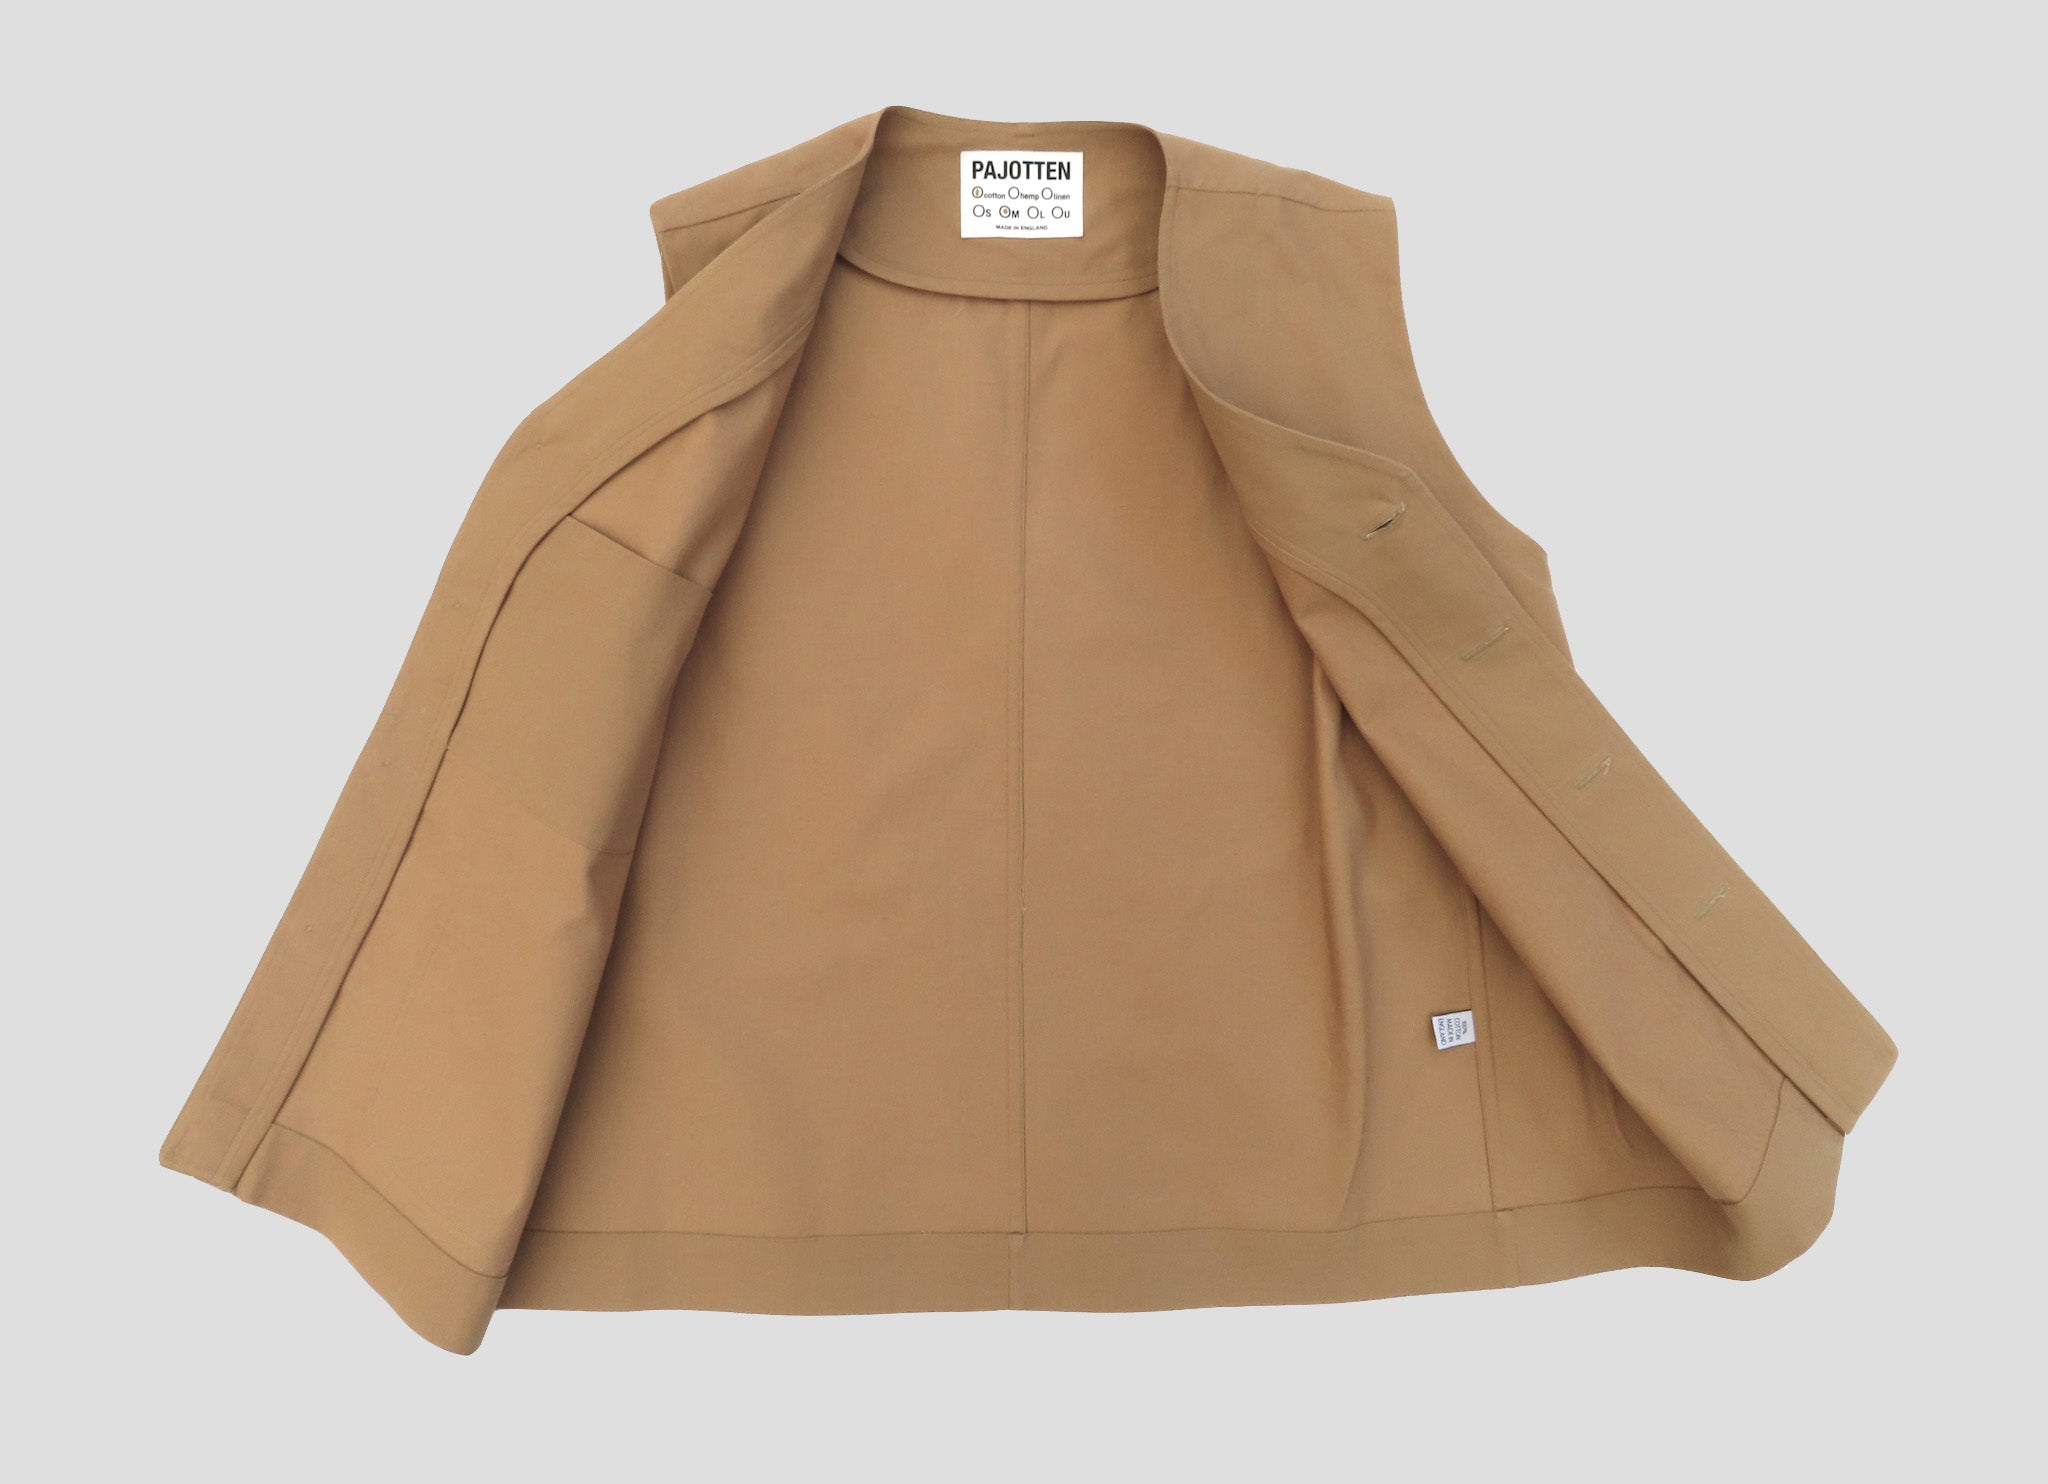 inside detail of a tan waistcoat